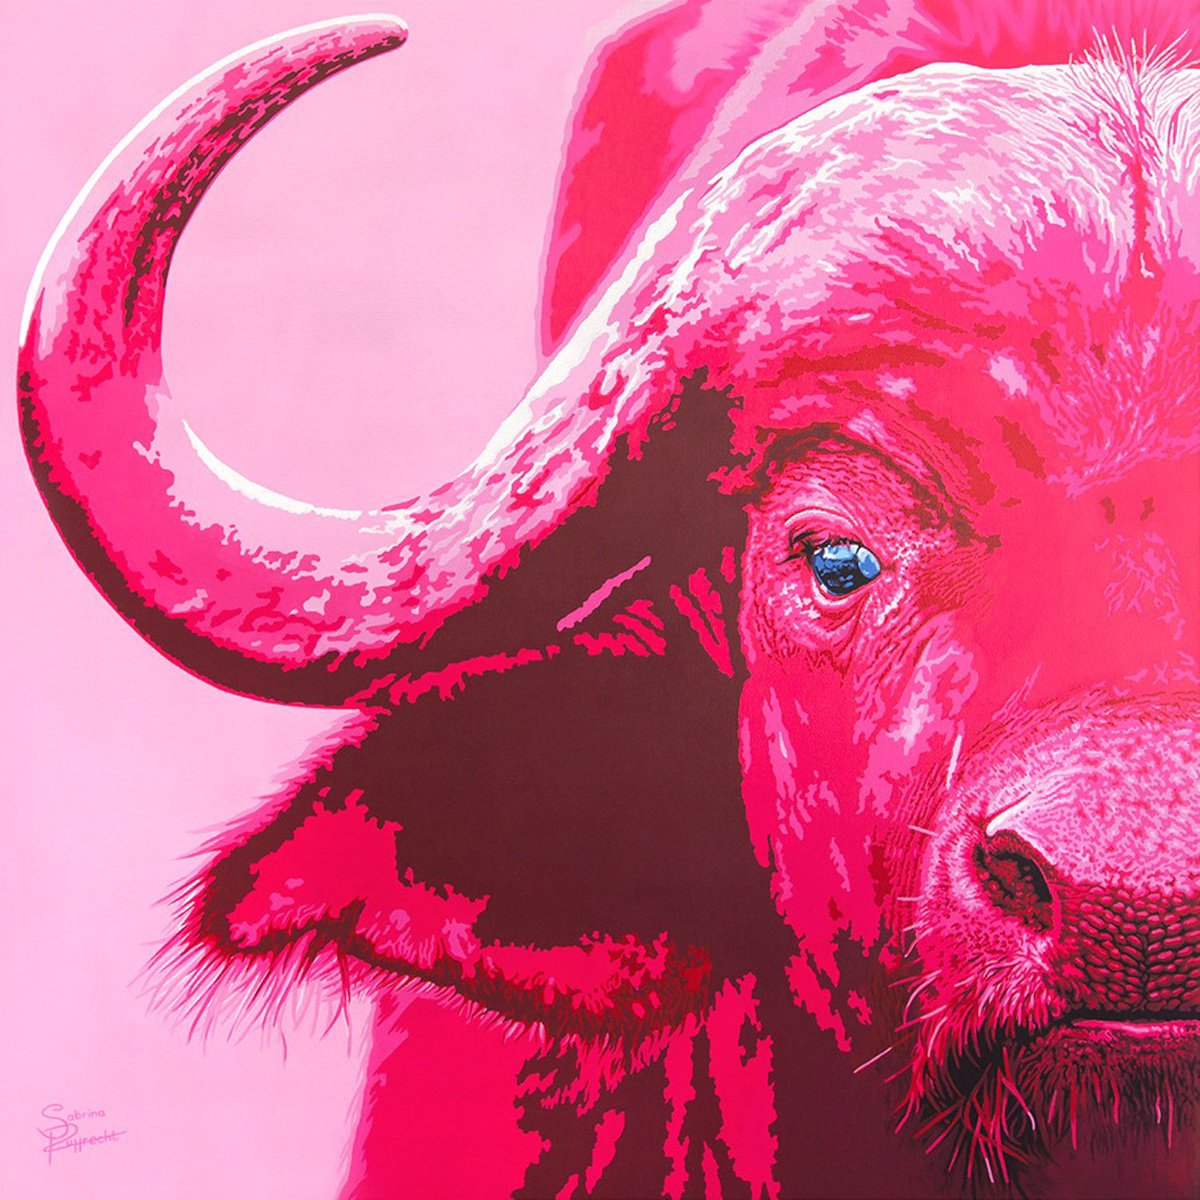 Pink Buffalo by Sabrina Rupprecht